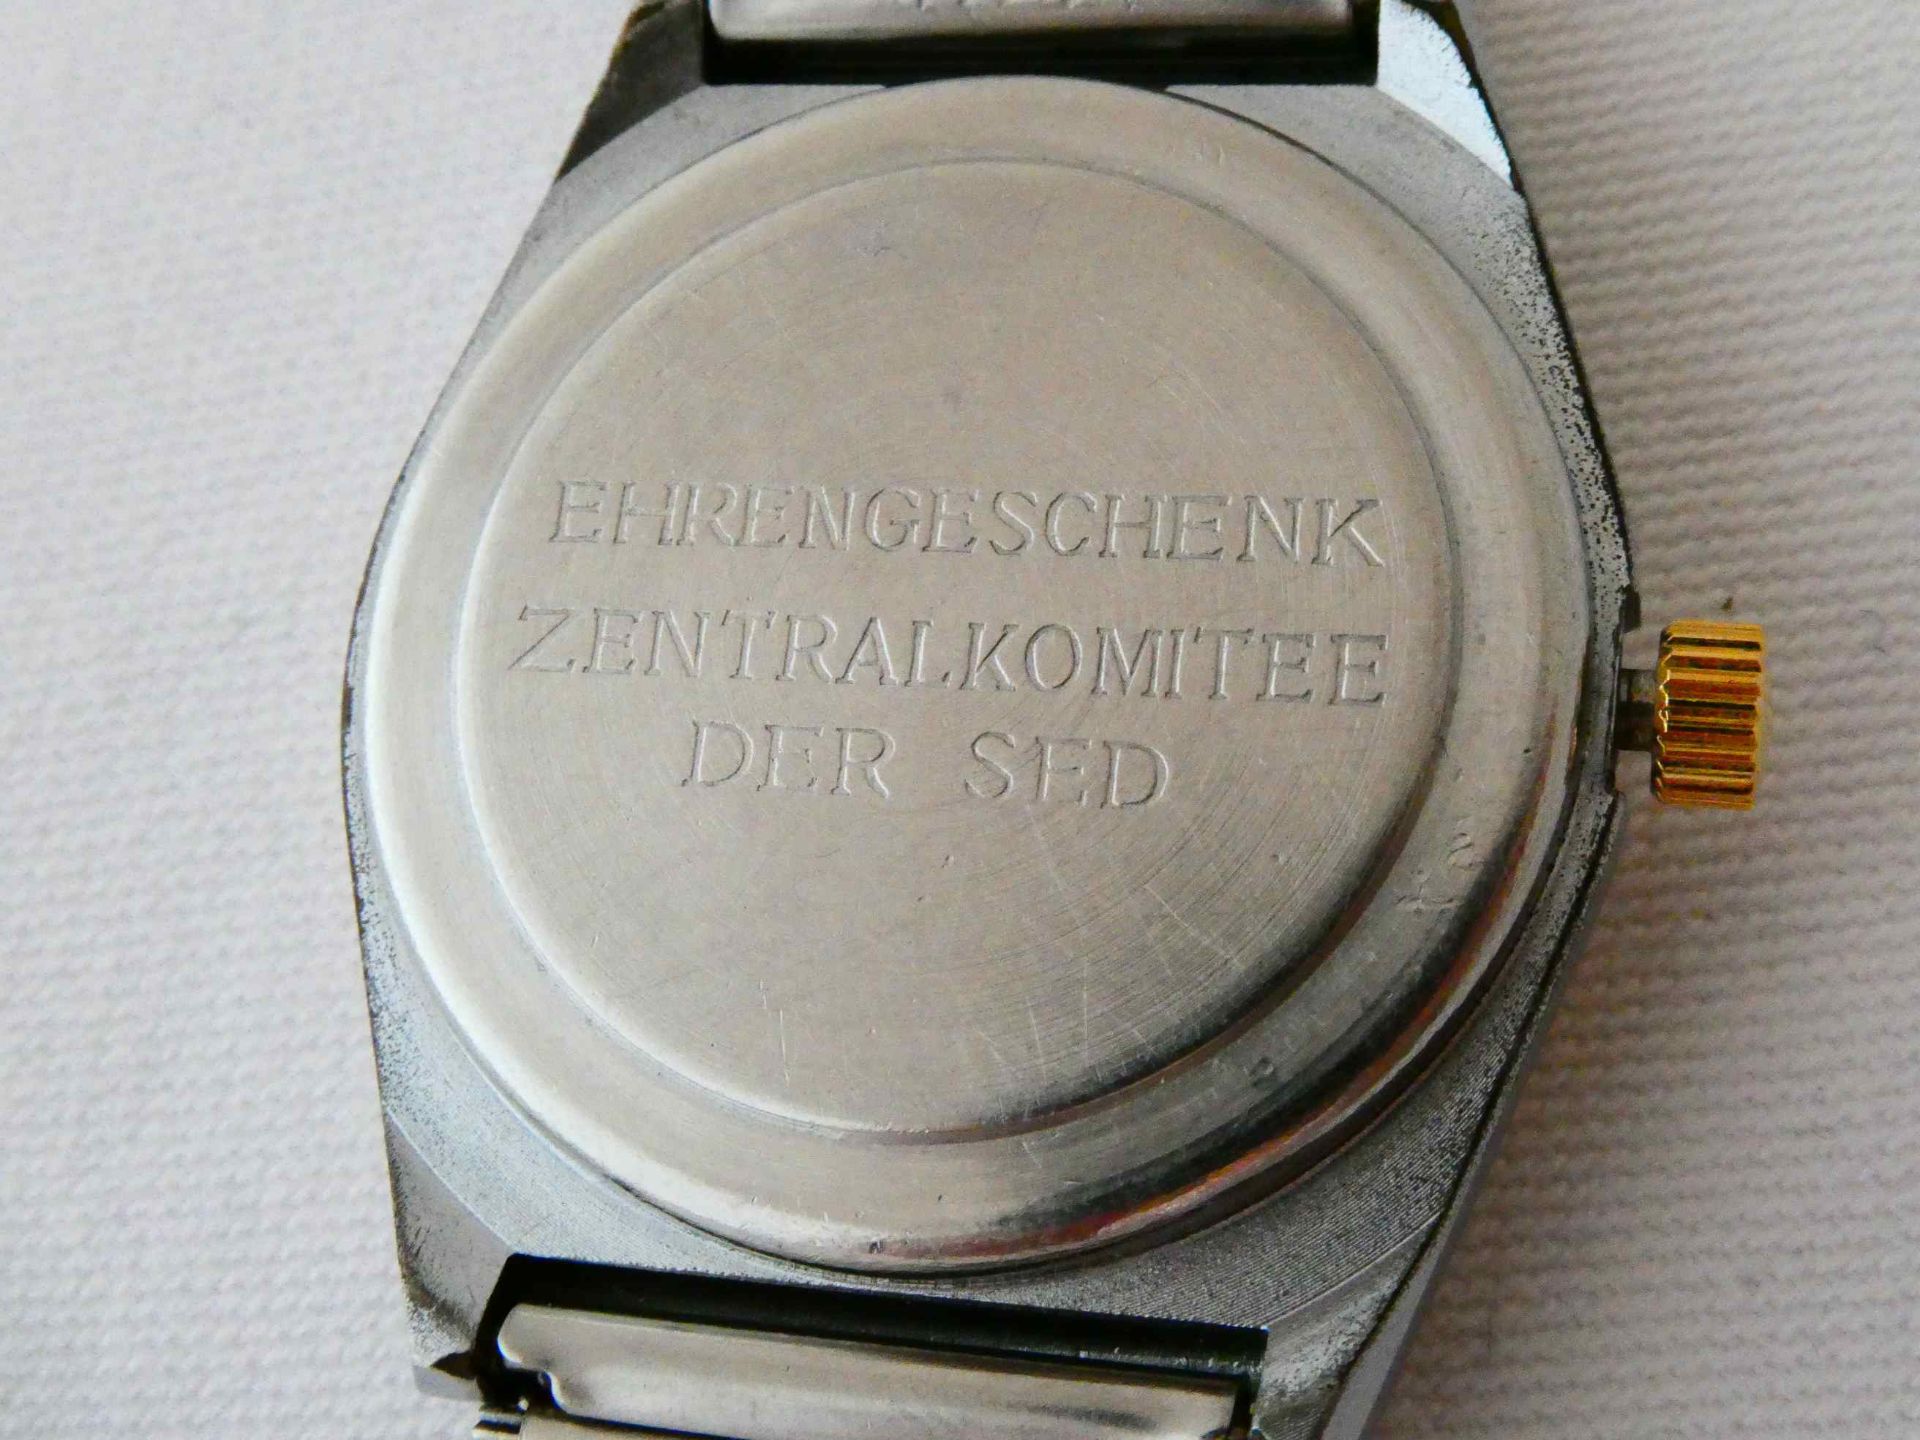 Ehrenuhr Ruhla "Ehrengeschenk Zentralkomitee der SED" - Image 4 of 5